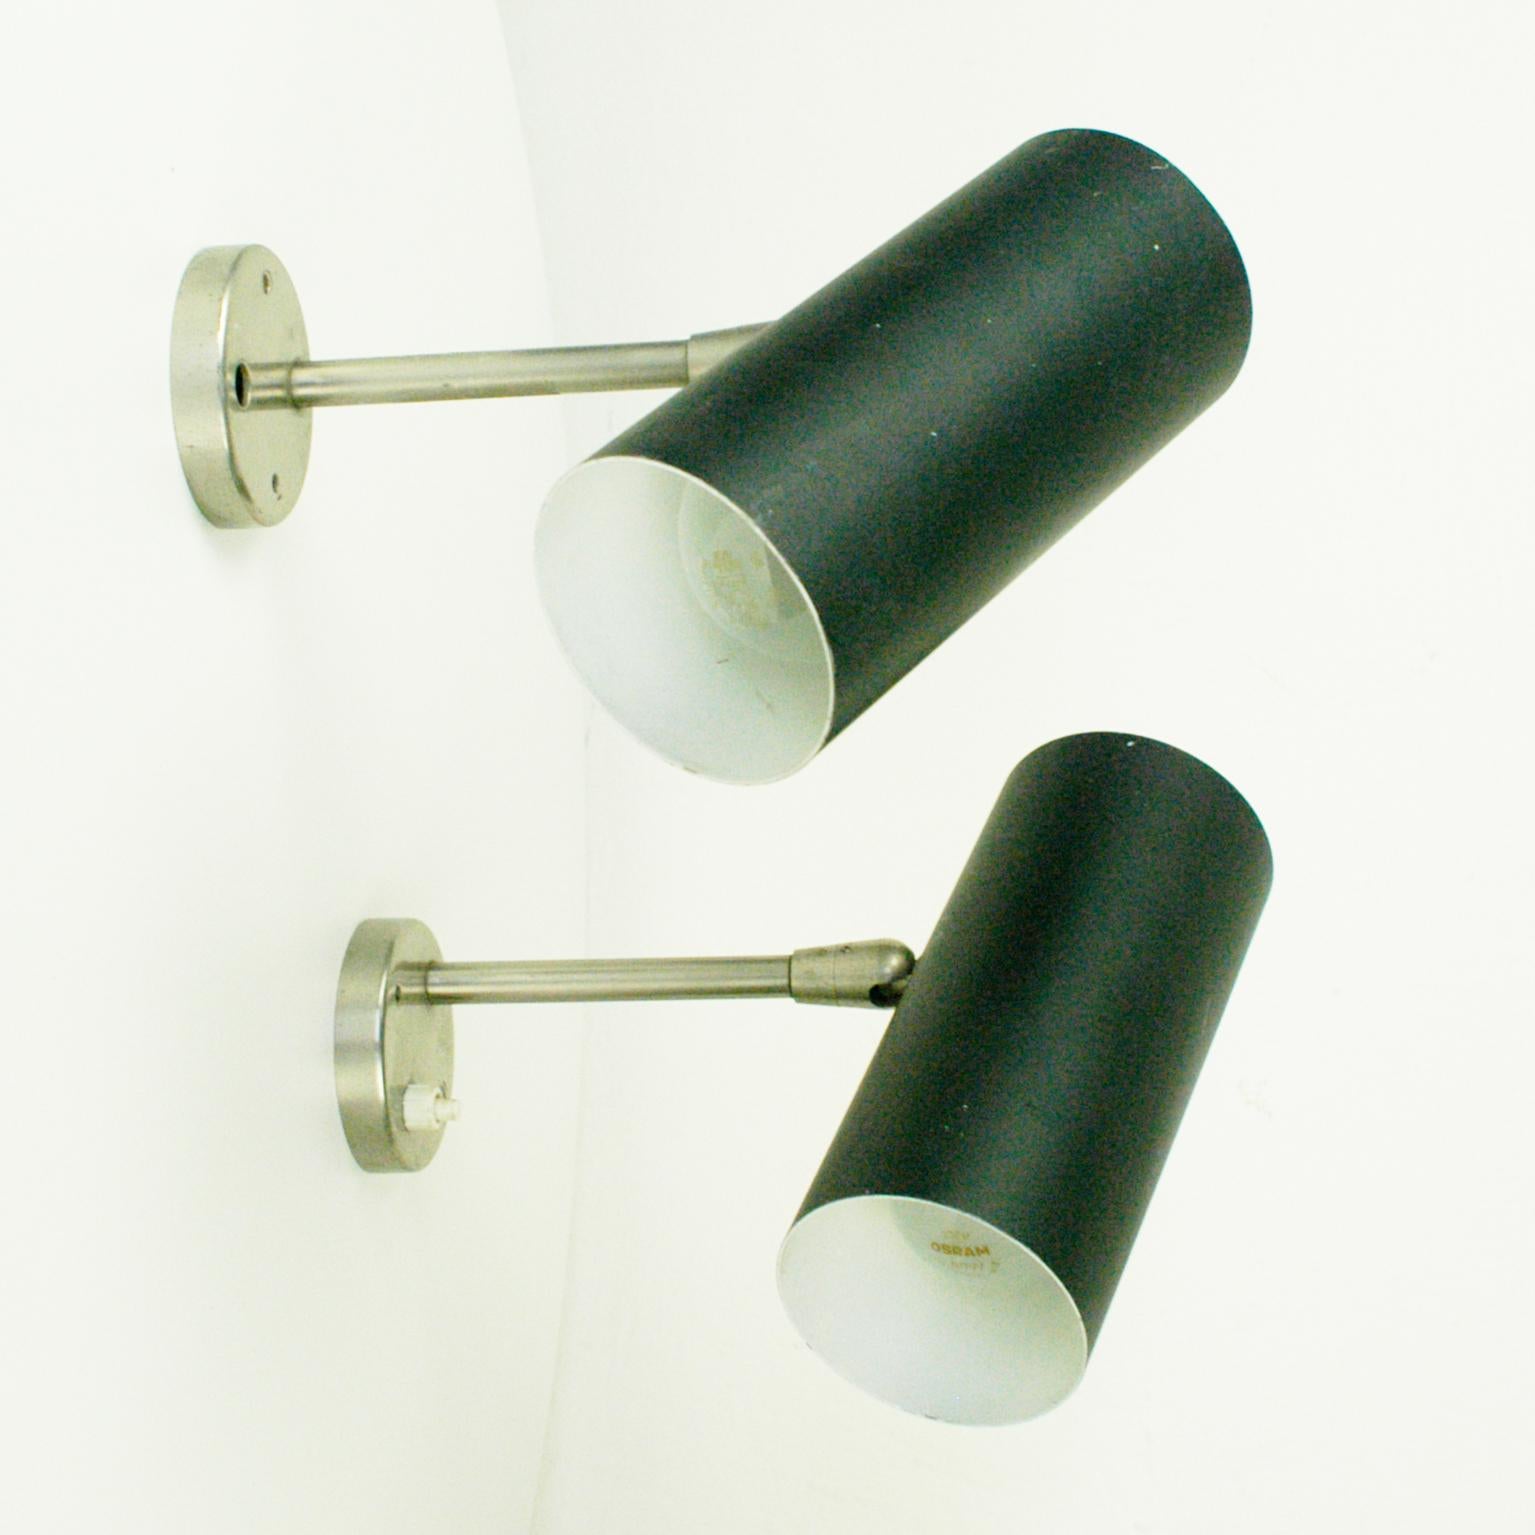 Dieses minimalistische und reine österreichische Midcentury zylindrische Wandleuchtenpaar wurde von J. T. Kalmar in den 1960er Jahren in Wien entworfen und hergestellt.
Sie haben zylindrische, schwarz lackierte Metallschirme auf einem Sockel aus